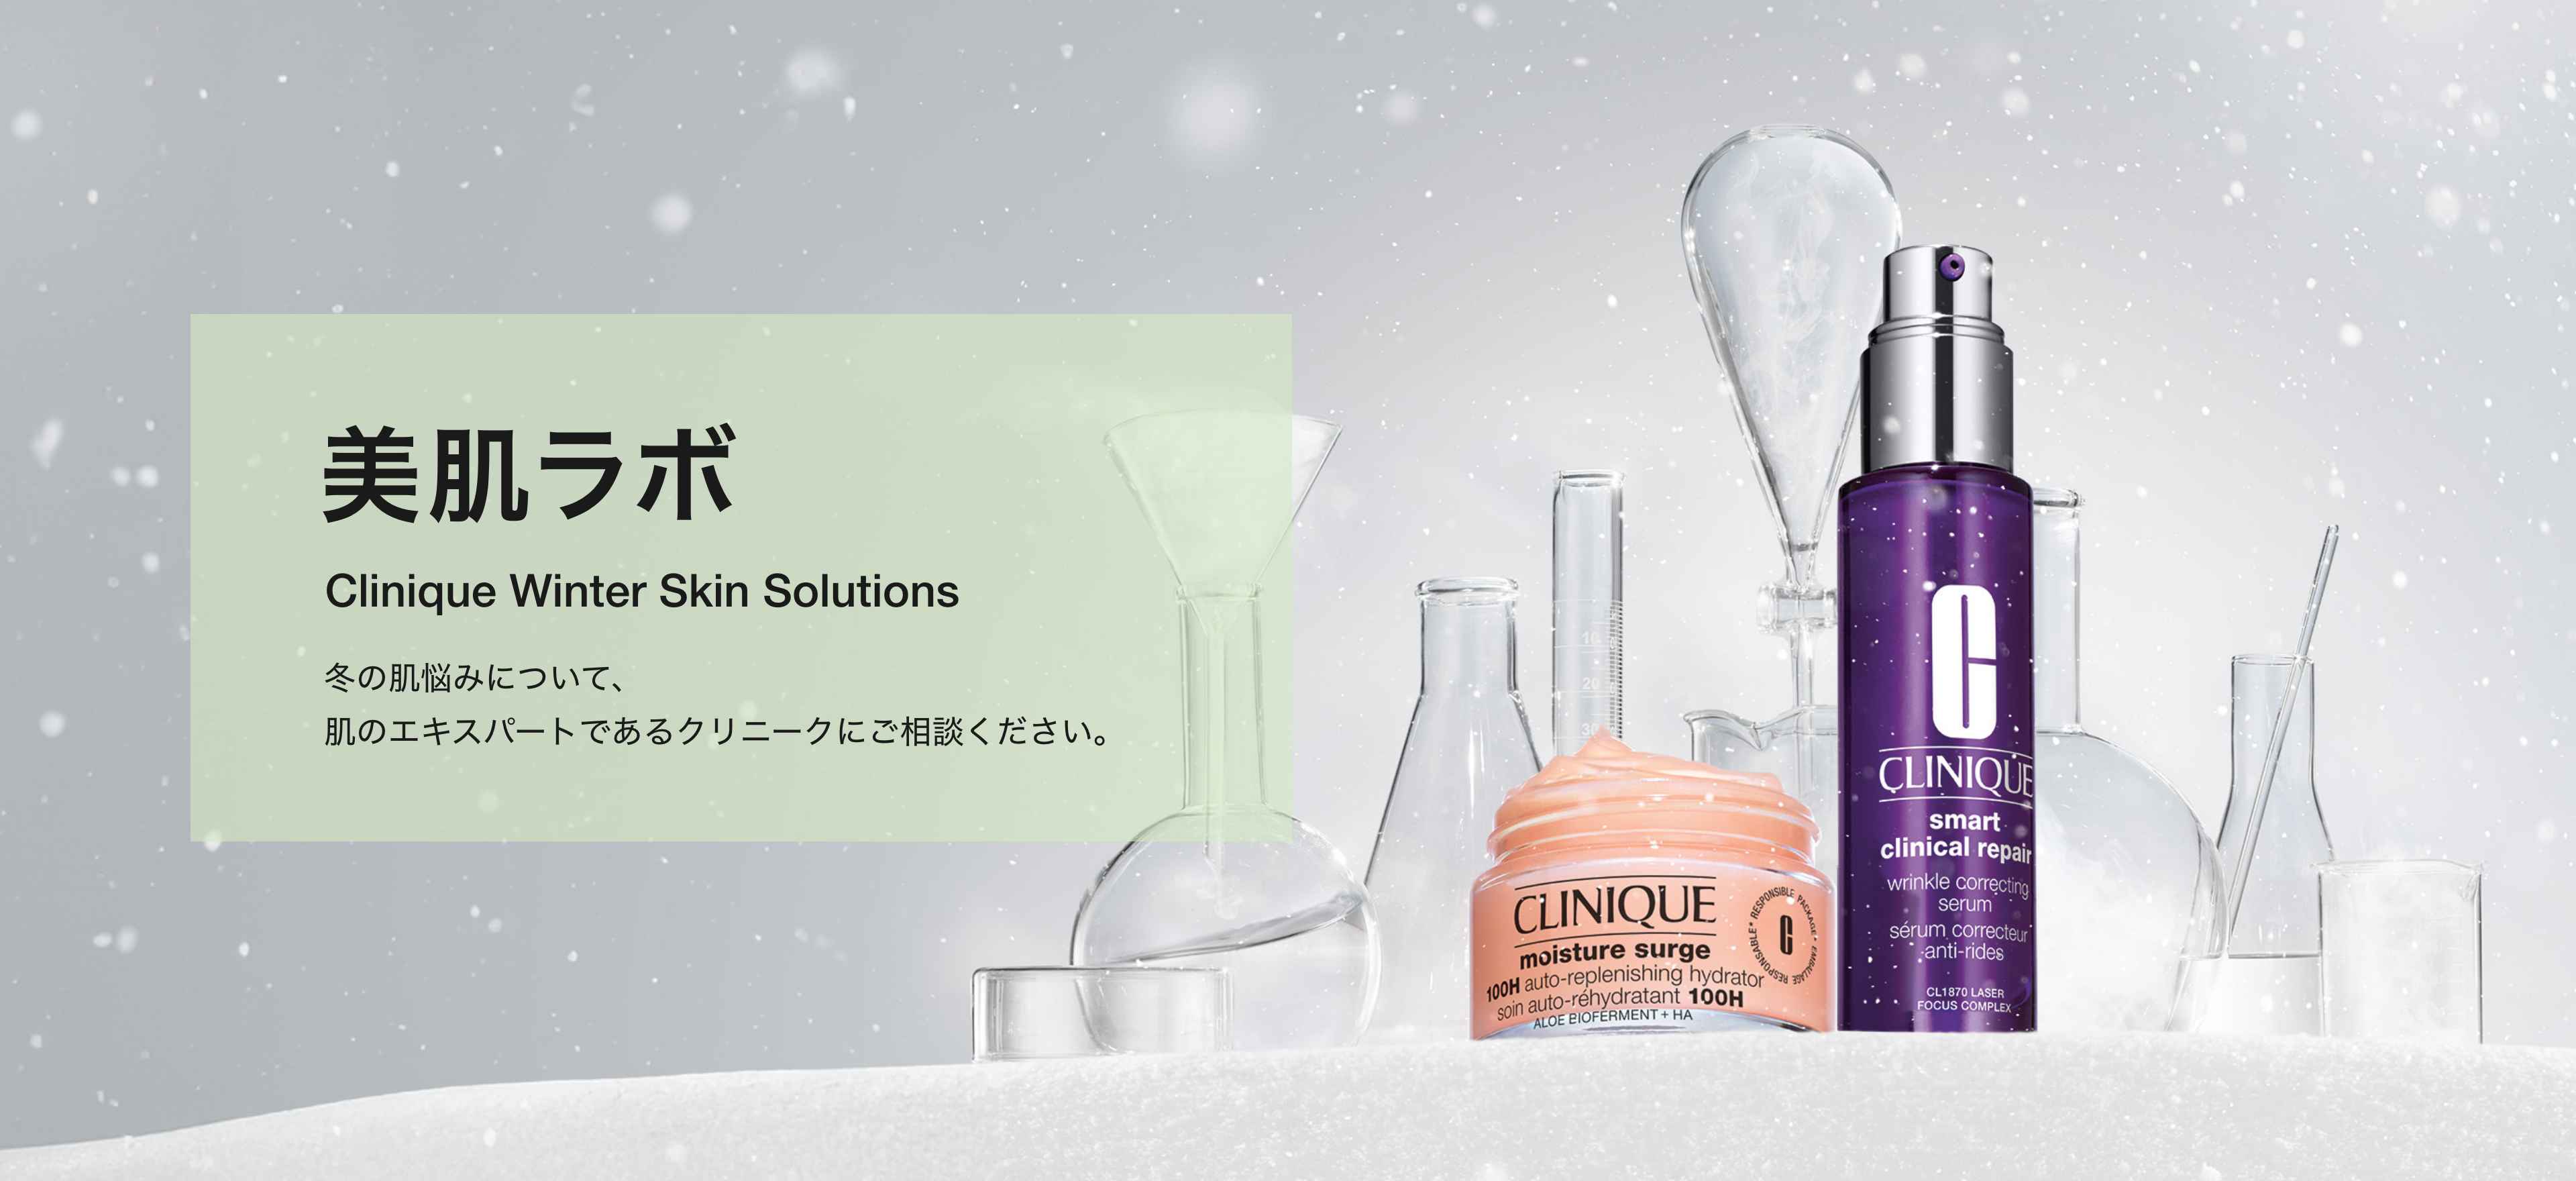 美肌ラボ Clinique Winter Skin Solutions 冬の肌悩みについて、 肌のエキスパートであるクリニークにご相談ください。